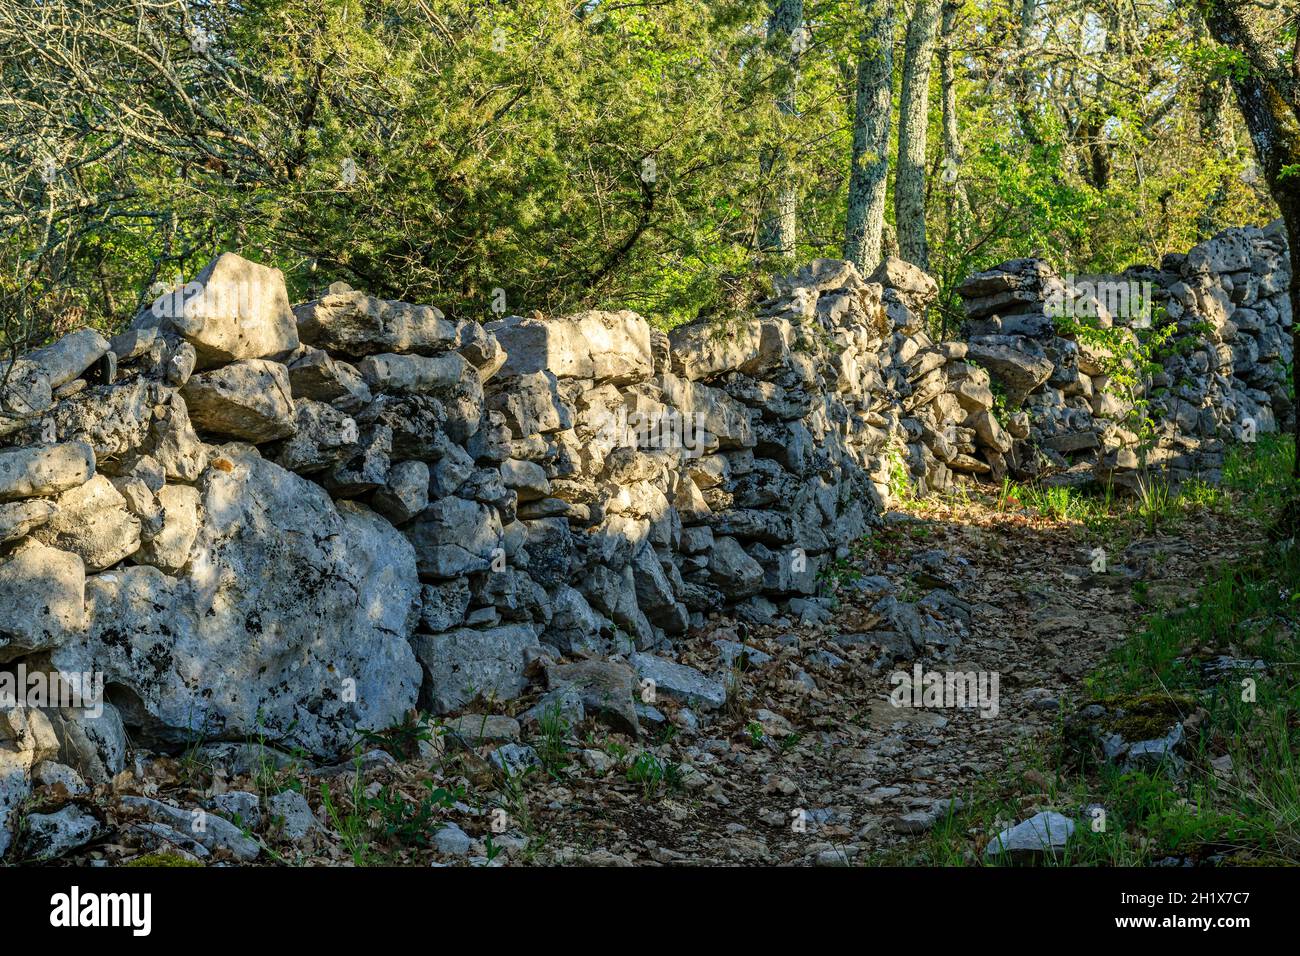 France, Ardeche, Parc naturel regional des Monts d'Ardeche (Monts d'Ardeche Regional Natural Park), Les Vans, Bois de Paiolive, path and dry stone low Stock Photo